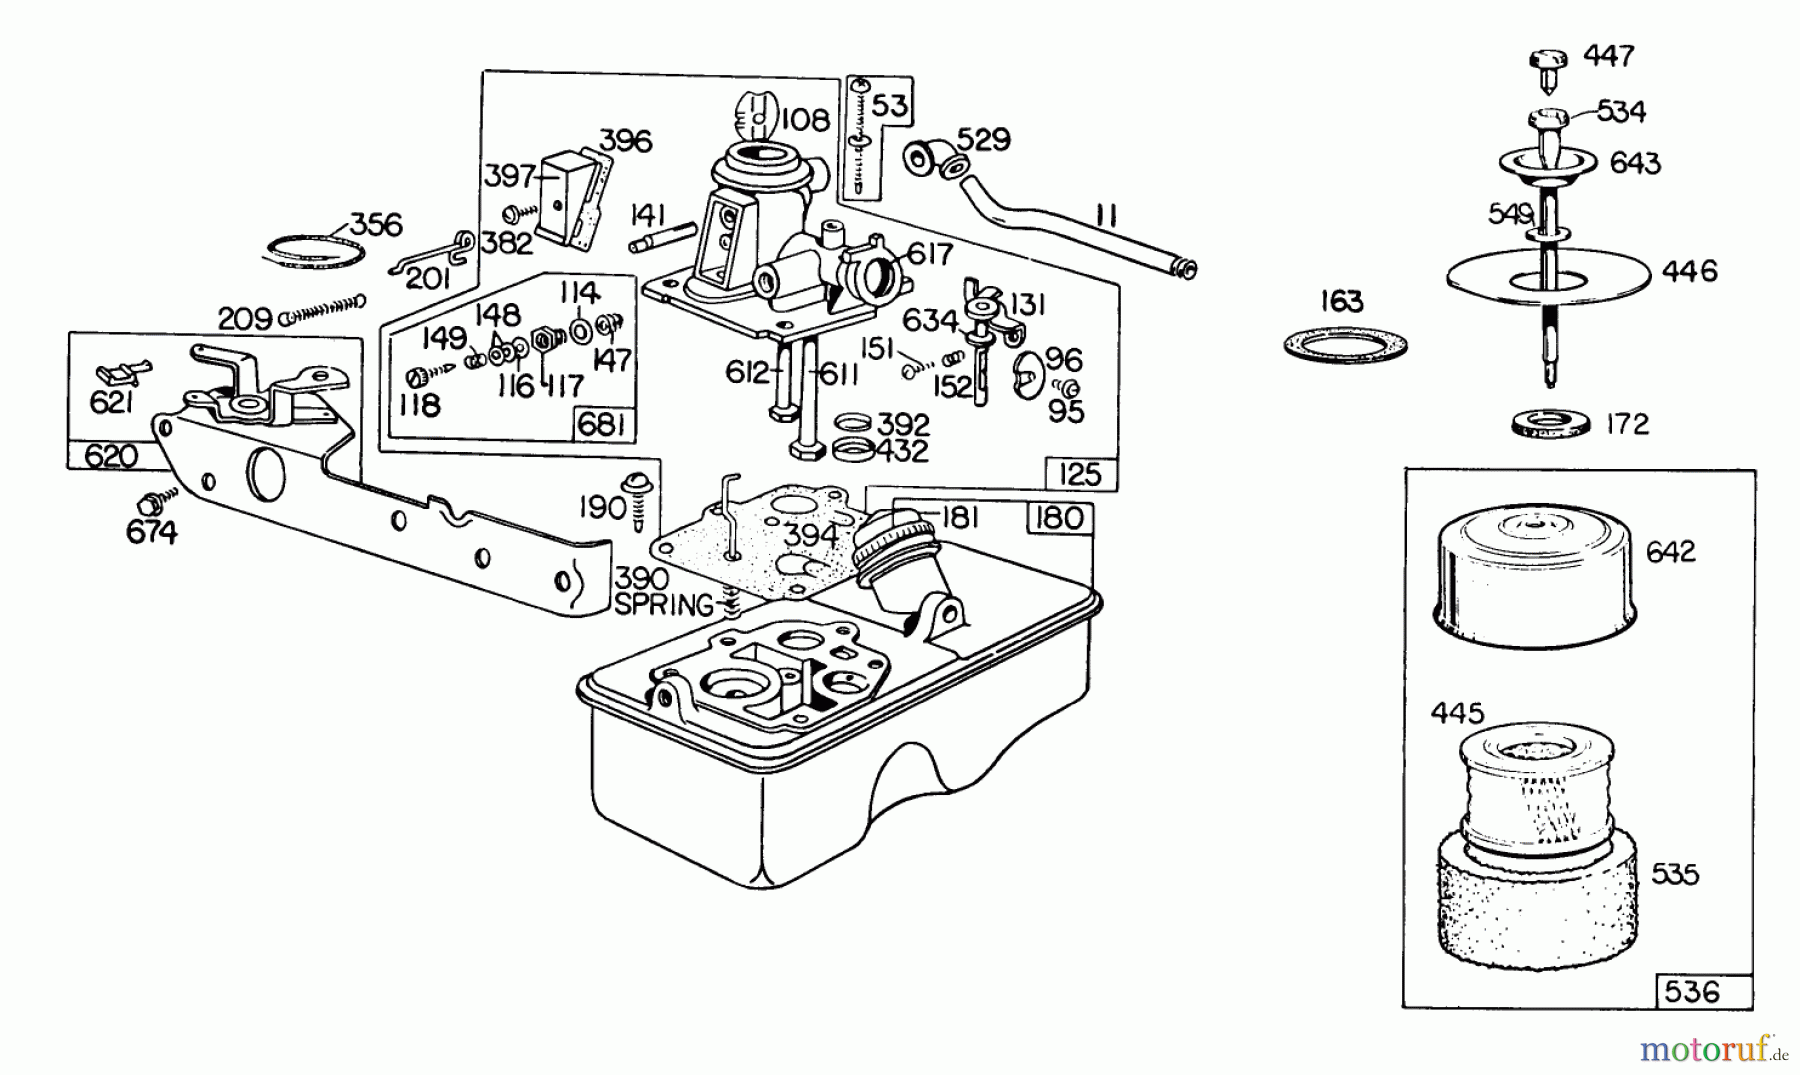  Toro Neu Mowers, Walk-Behind Seite 2 23400 - Toro Lawnmower, 1982 (2000001-2999999) ENGINE BRIGGS & STRATTON MODEL 110908-0492-01 #1